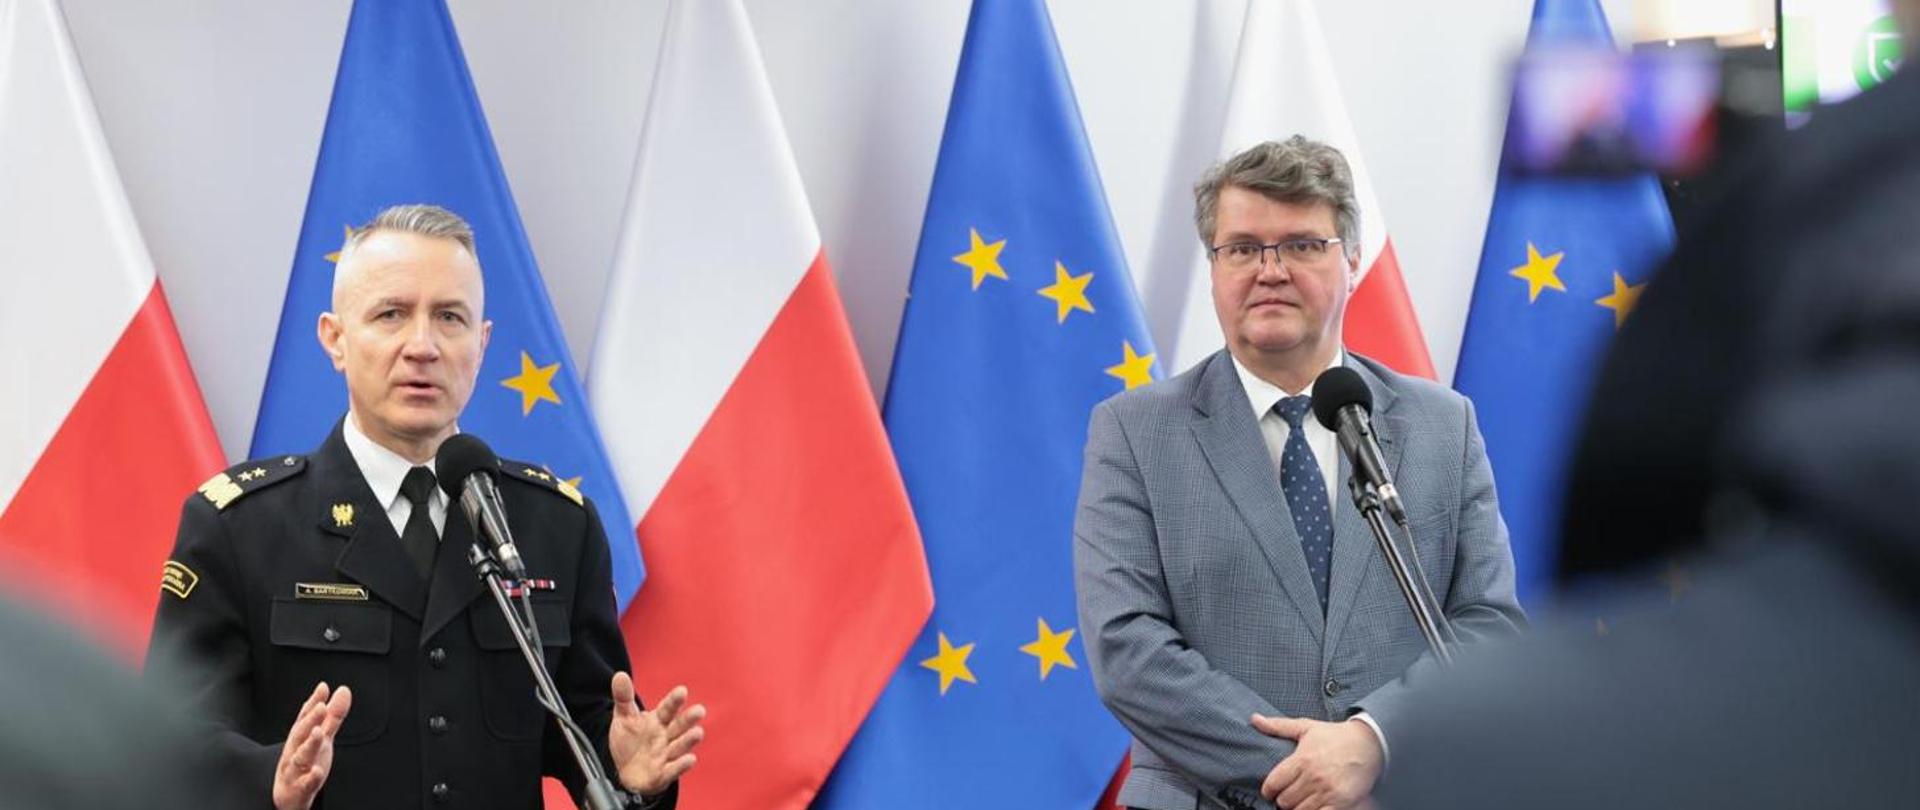 Na zdjęciu widzimy dwóch mężczyzn stojących przed mikrofonami. Mężczyzna z lewej strony kadru to strażak ubrany w mundur galowy koloru czarnego, przemawia, ręce lekko uniesione. Mężczyzna po prawej stronie kadru to cywil ubrany w marynarkę koloru szarego, okulary na oczach. Za mężczyznami widzimy flagi Polski oraz Unii Europejskiej. 